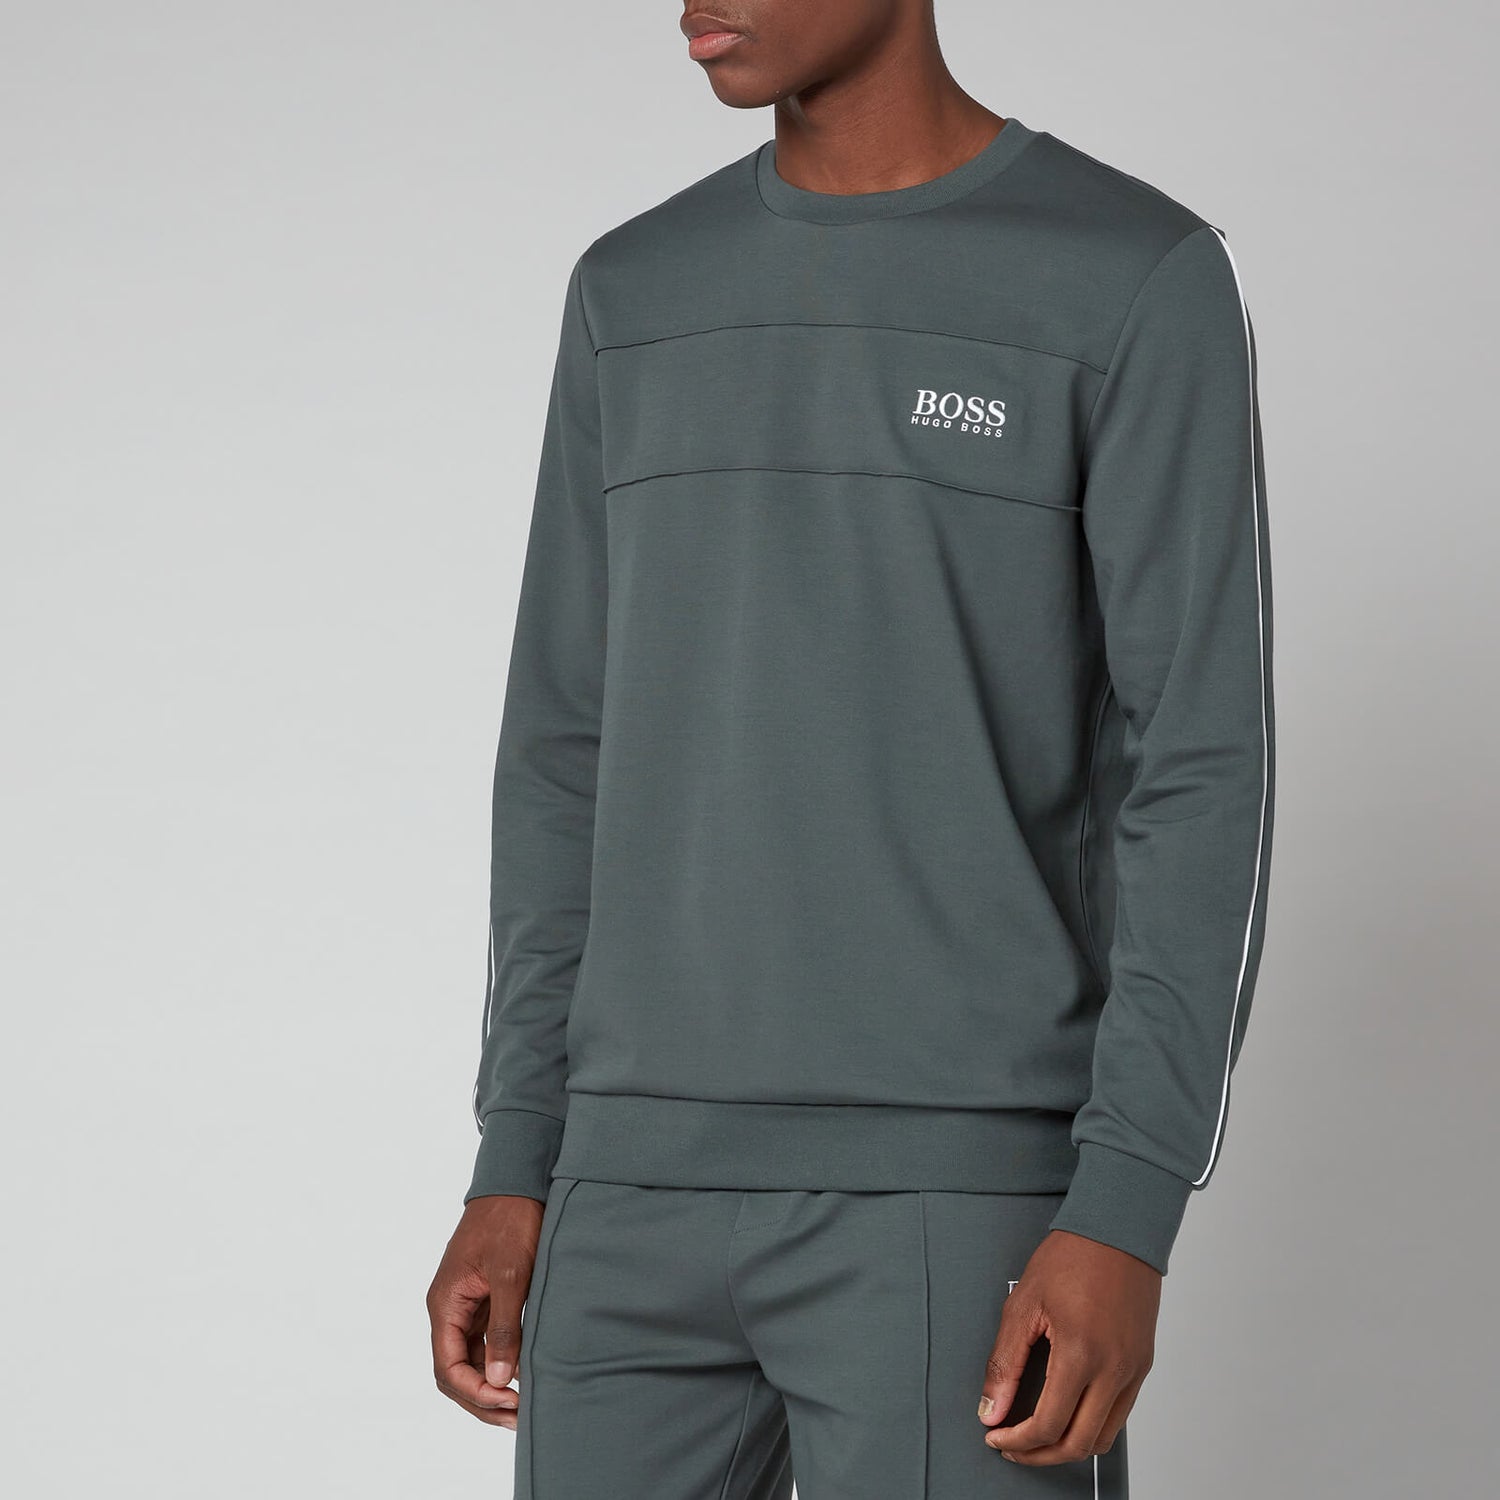 BOSS Bodywear Men's Tracksuit Sweatshirt - Dark Green